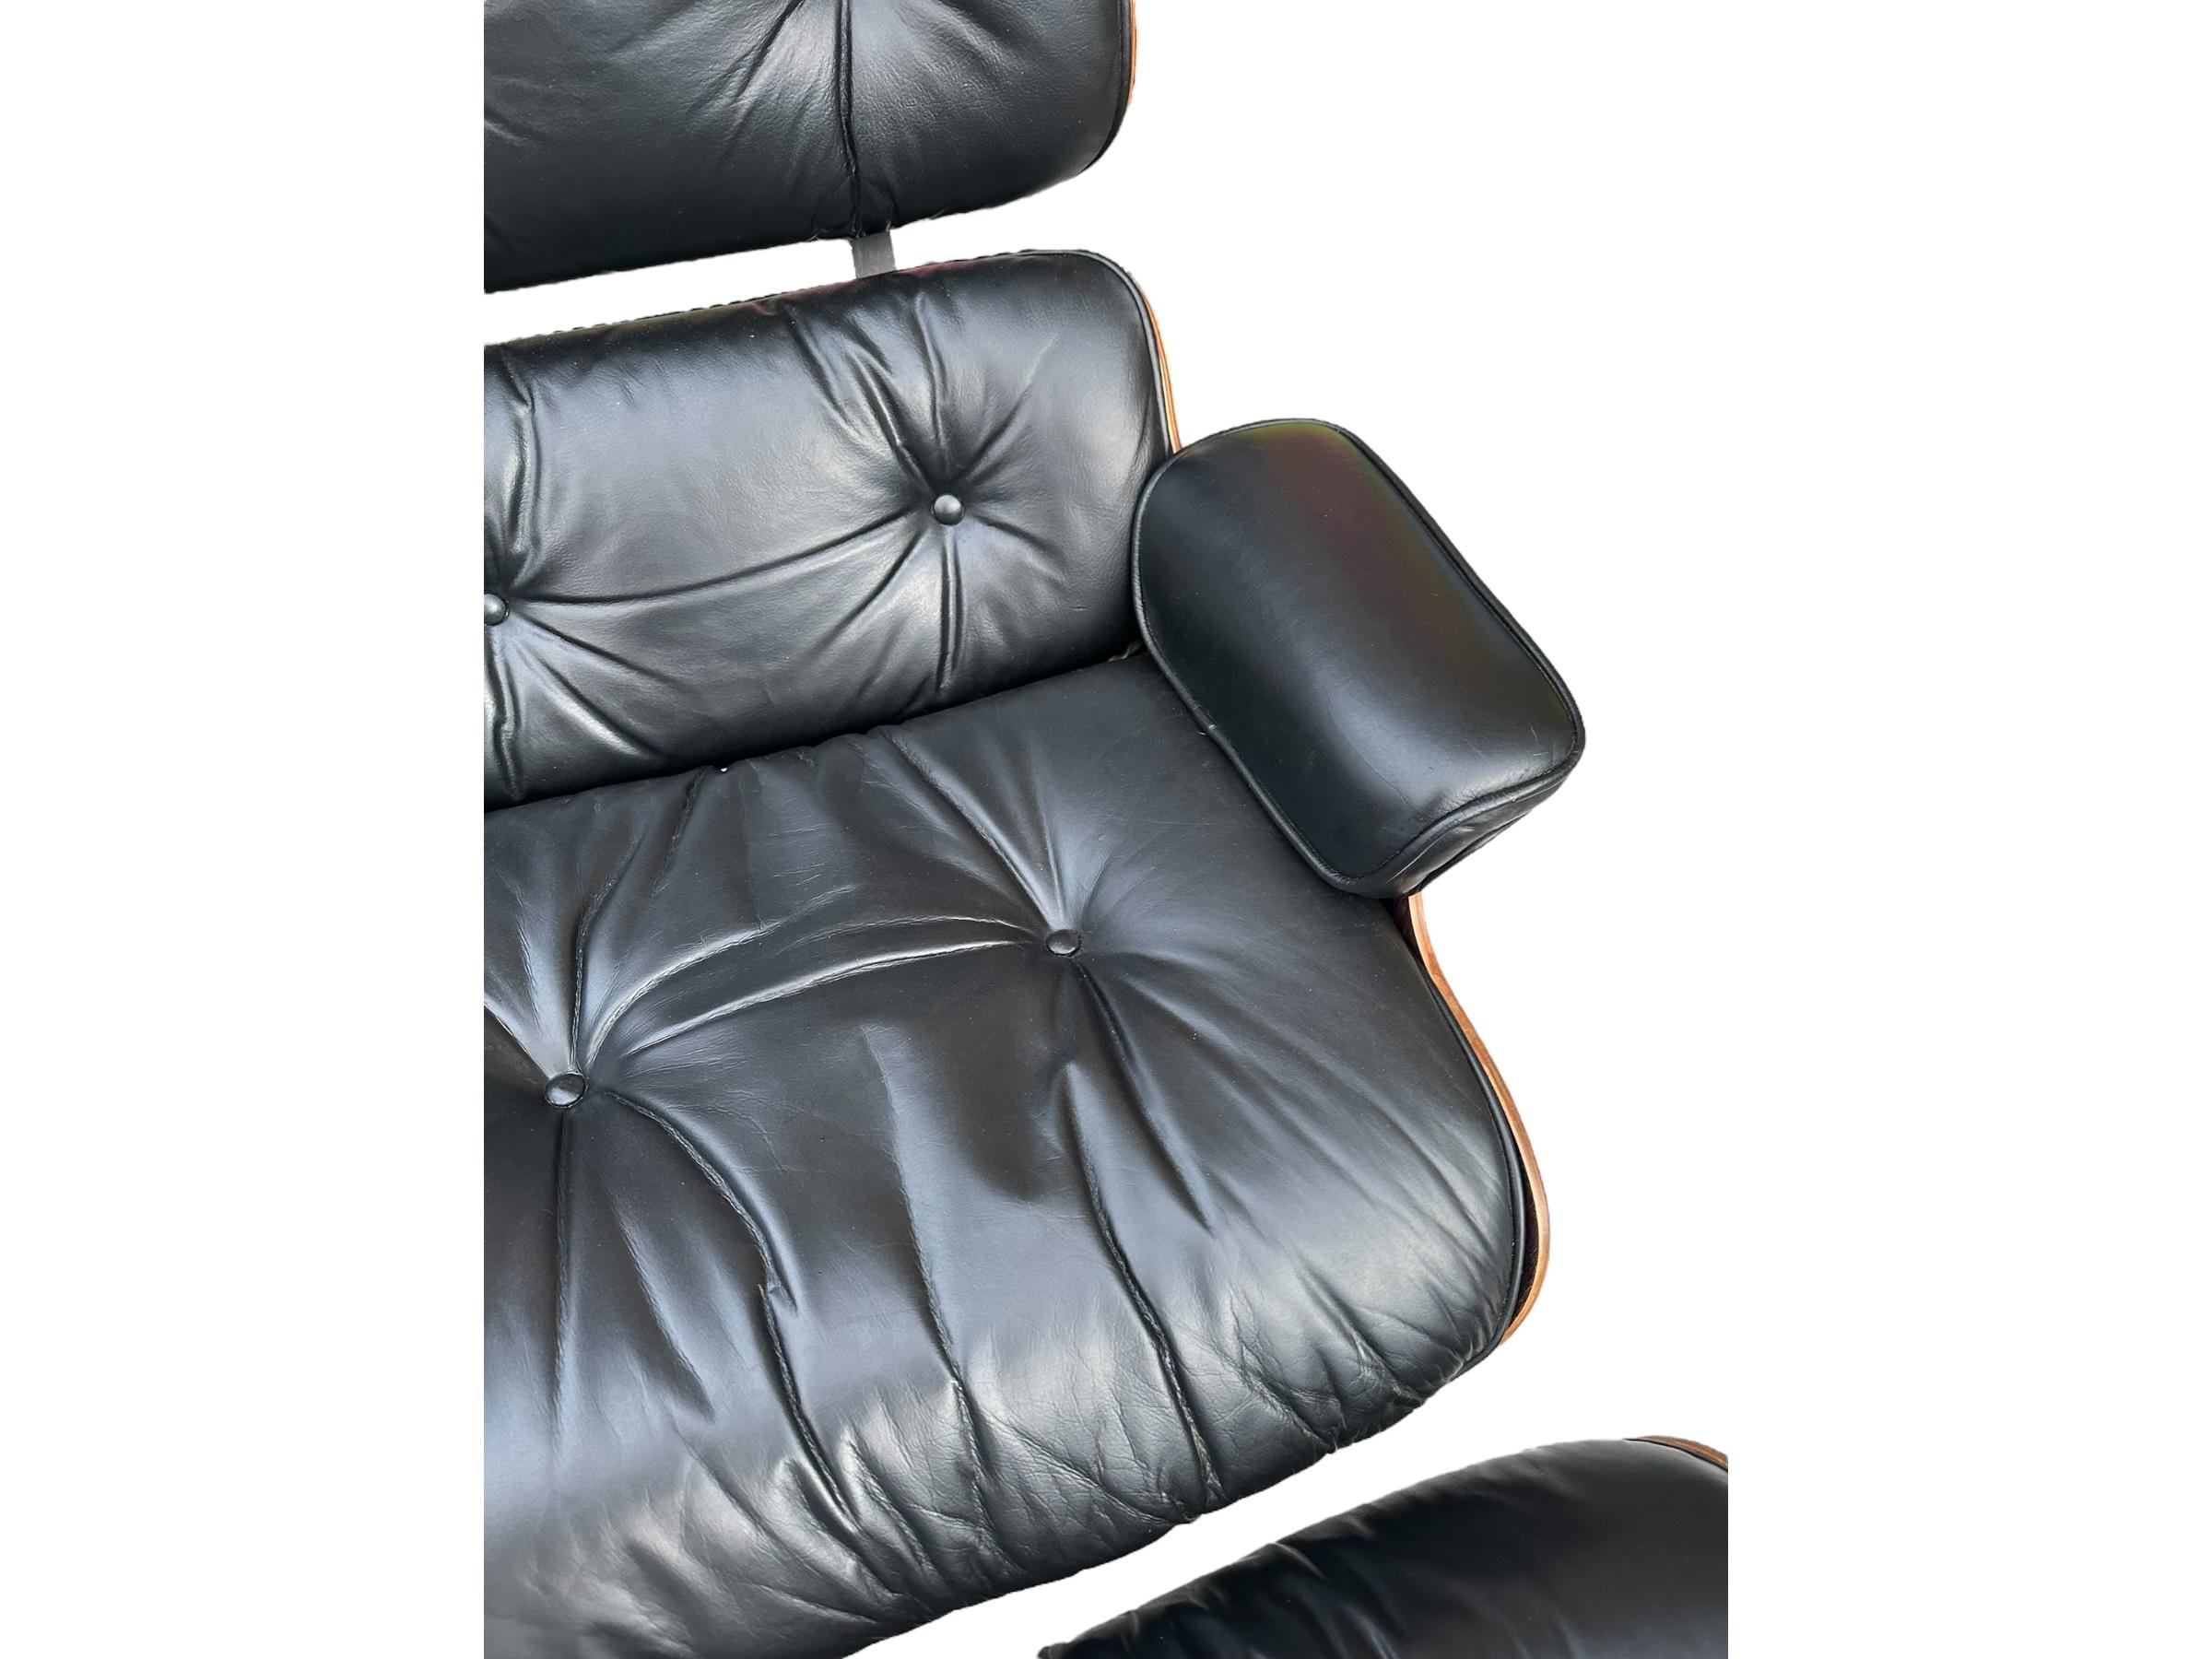 Magnifique chaise de salon et ottoman Eames de Herman Miller (modèles 671 et 671, respectivement) exécutés en palissandre brésilien lustré et en cuir noir. En bon état, avec le bois remis à neuf, les bases métalliques nettoyées et repeintes, et le